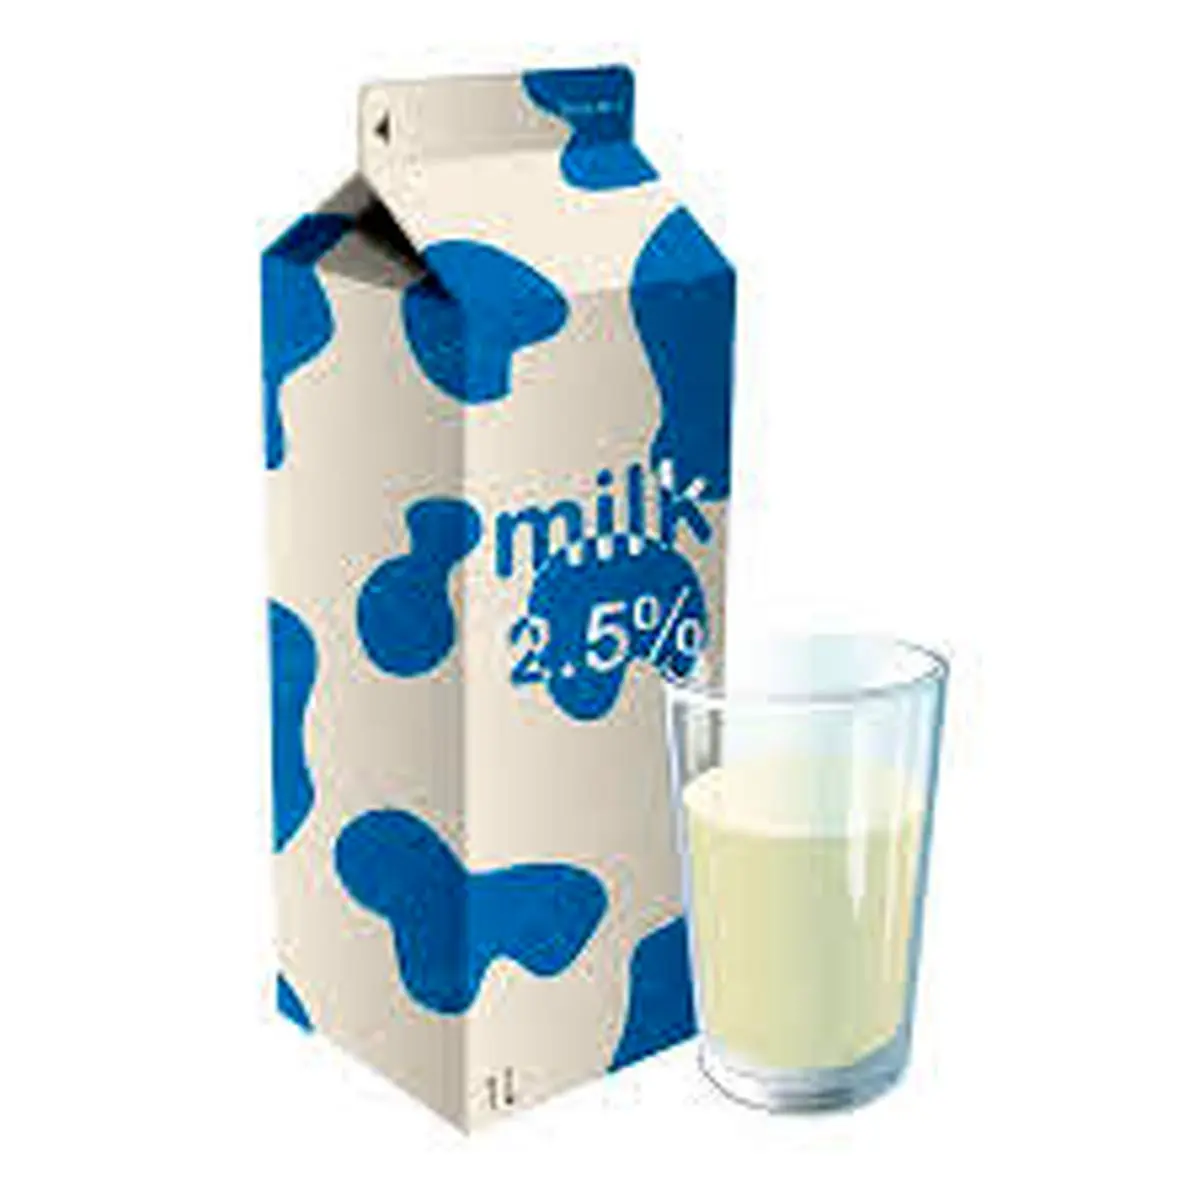 مصرف شیر در صبحانه موجب کاهش قندخون می شود